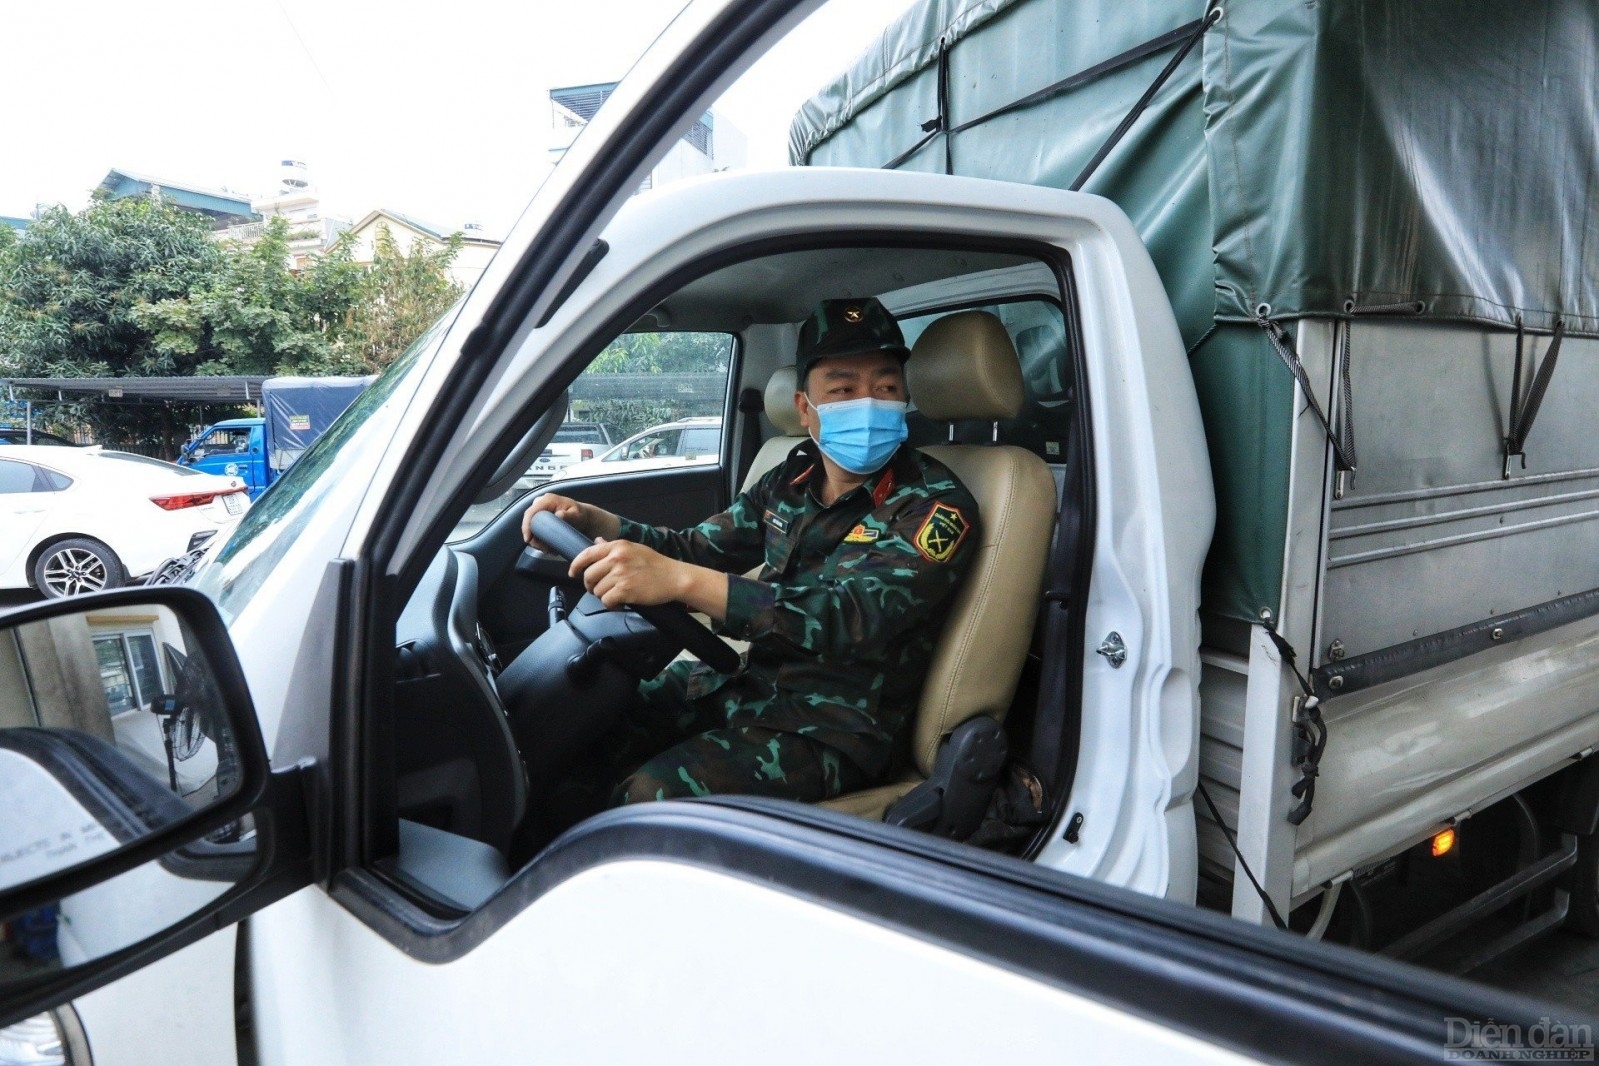 Quân đội tham gia hỗ trợ tại các trung tâm đăng kiểm 
Bắt đầu từ hôm nay 20/3/2023, lực lượng quân đội sẽ tham gia hỗ trợ công tác đăng kiểm tại Hà Nội và TP. Hồ Chí Minh.